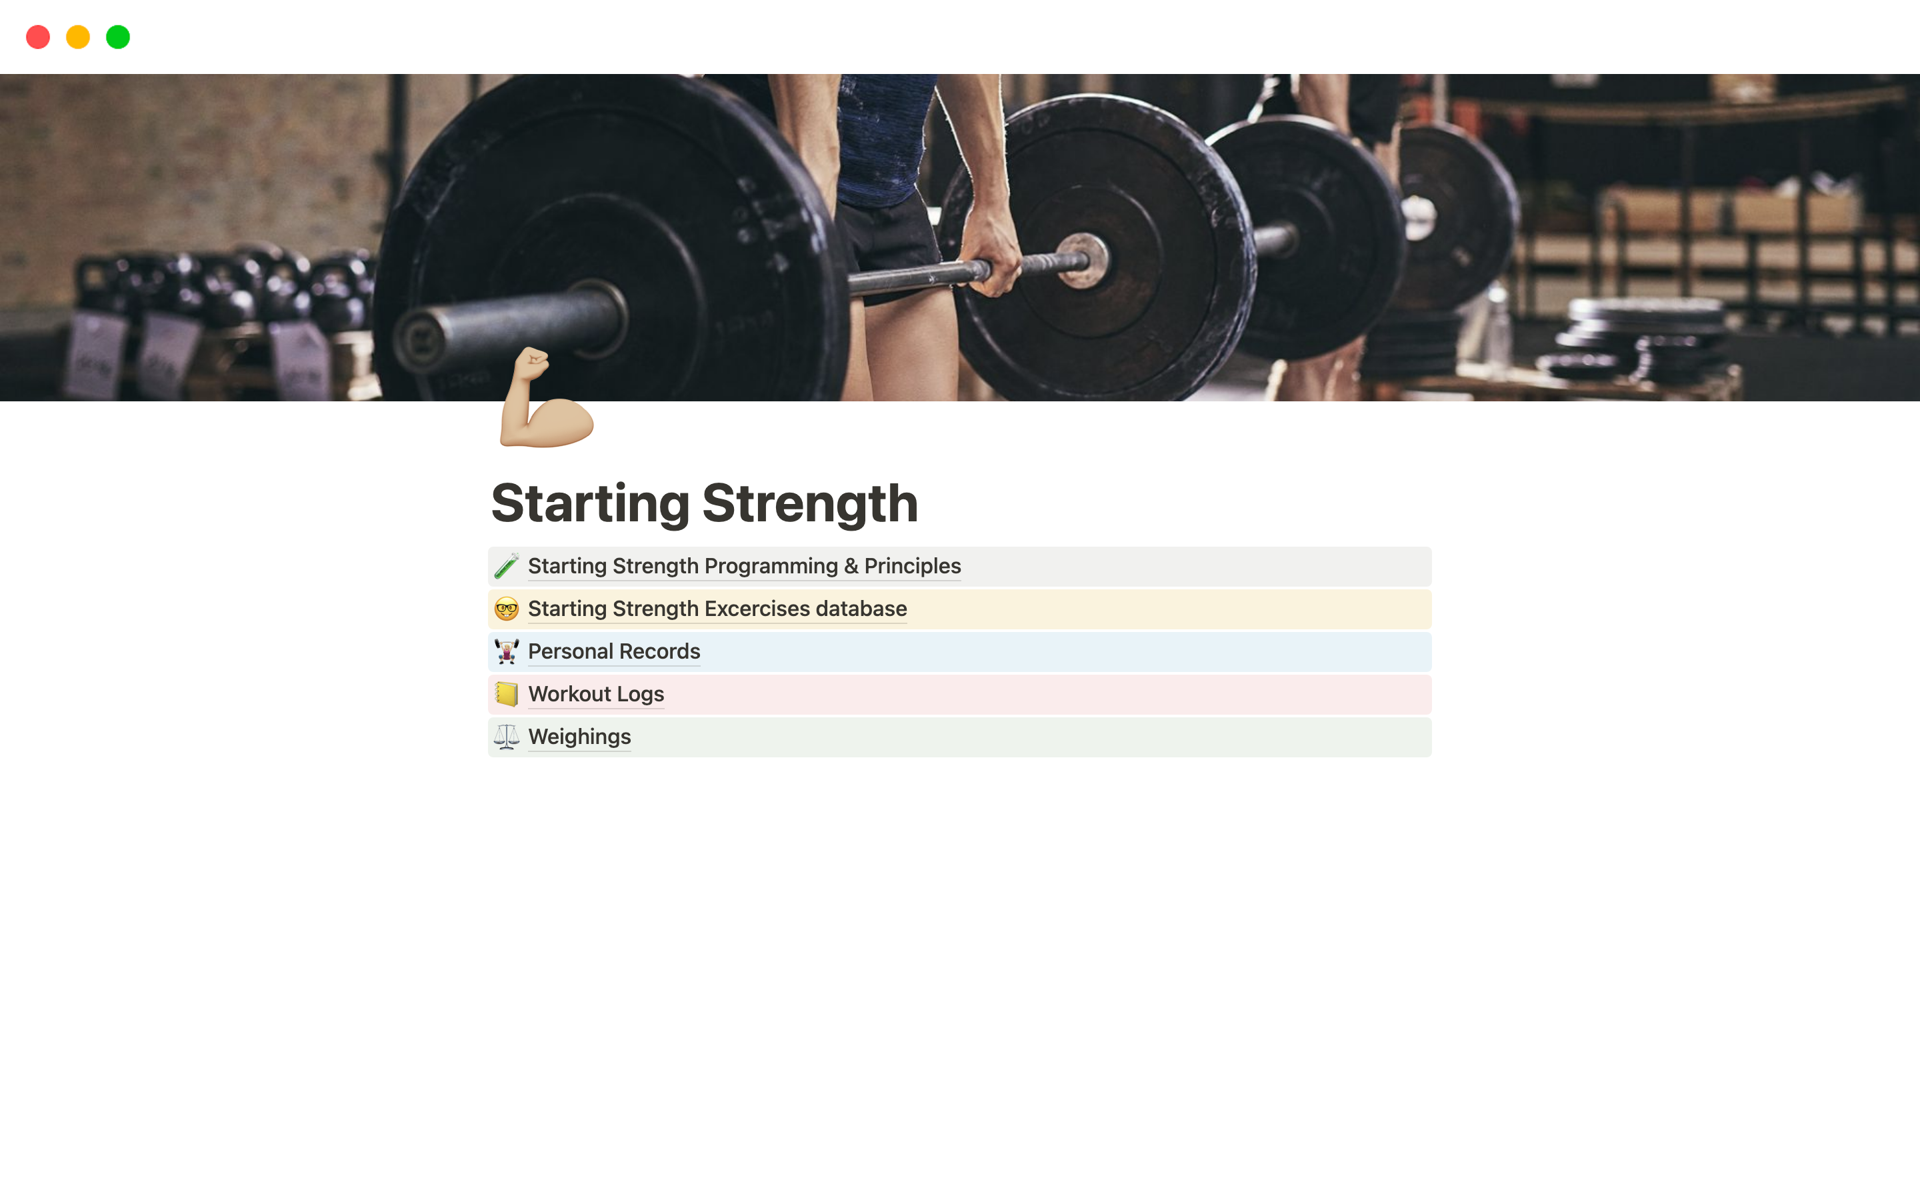 Aperçu du modèle de Starting Strength training program